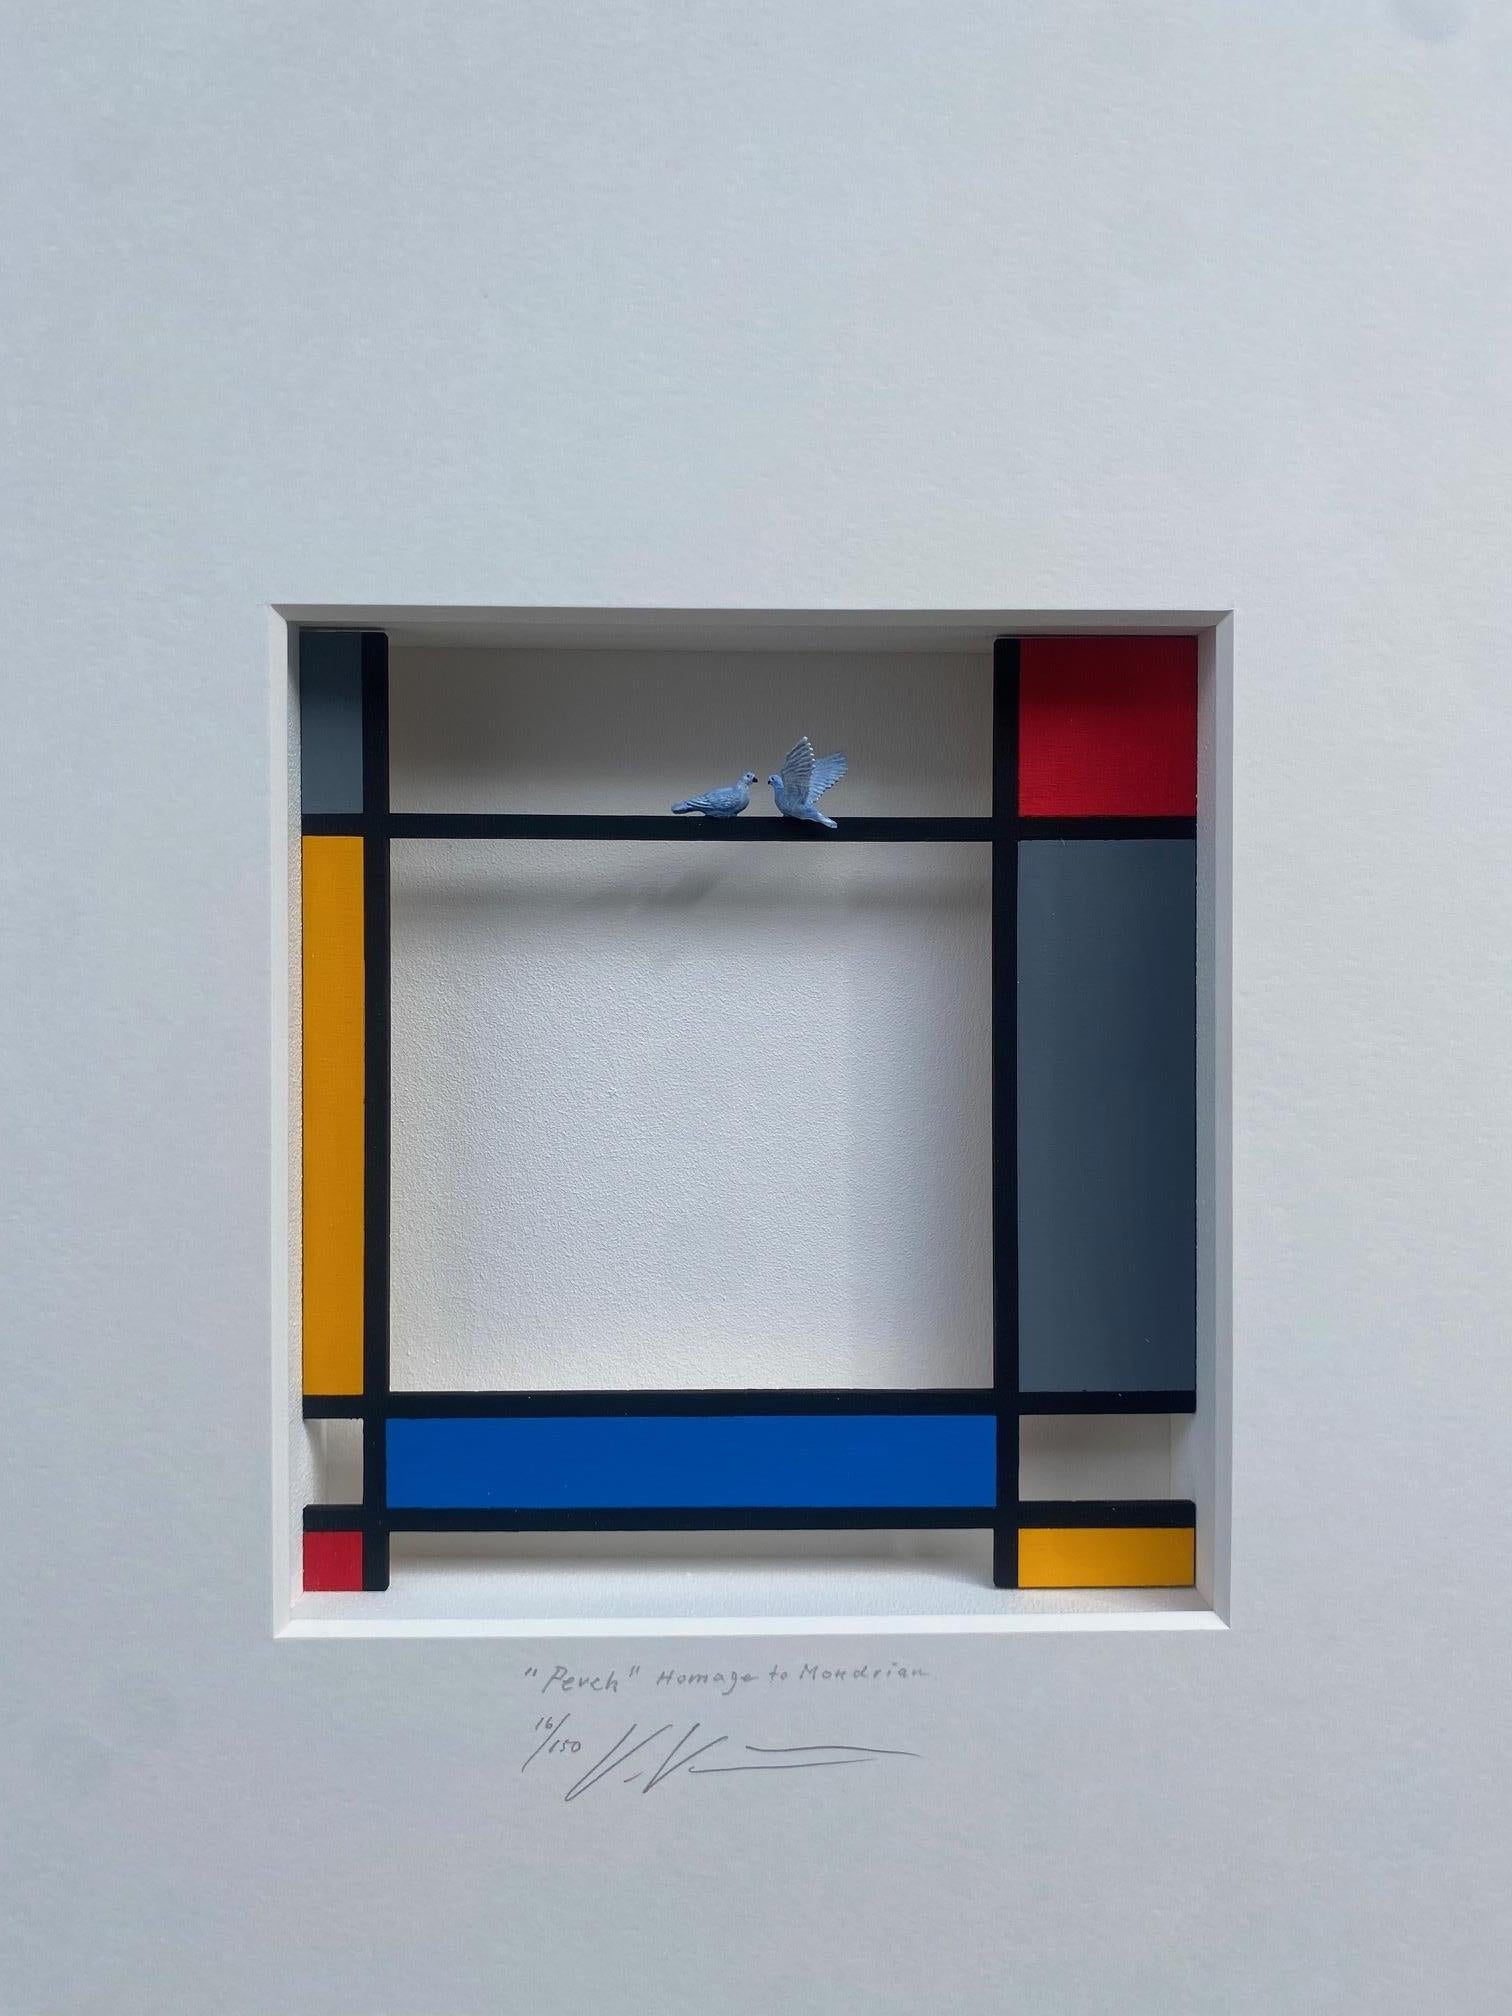 Hommage à Mondrian - Perchoir - œuvres d'art contemporain, design hommage au maître hollandais - Assemblage Mixed Media Art par Volker Kuhn